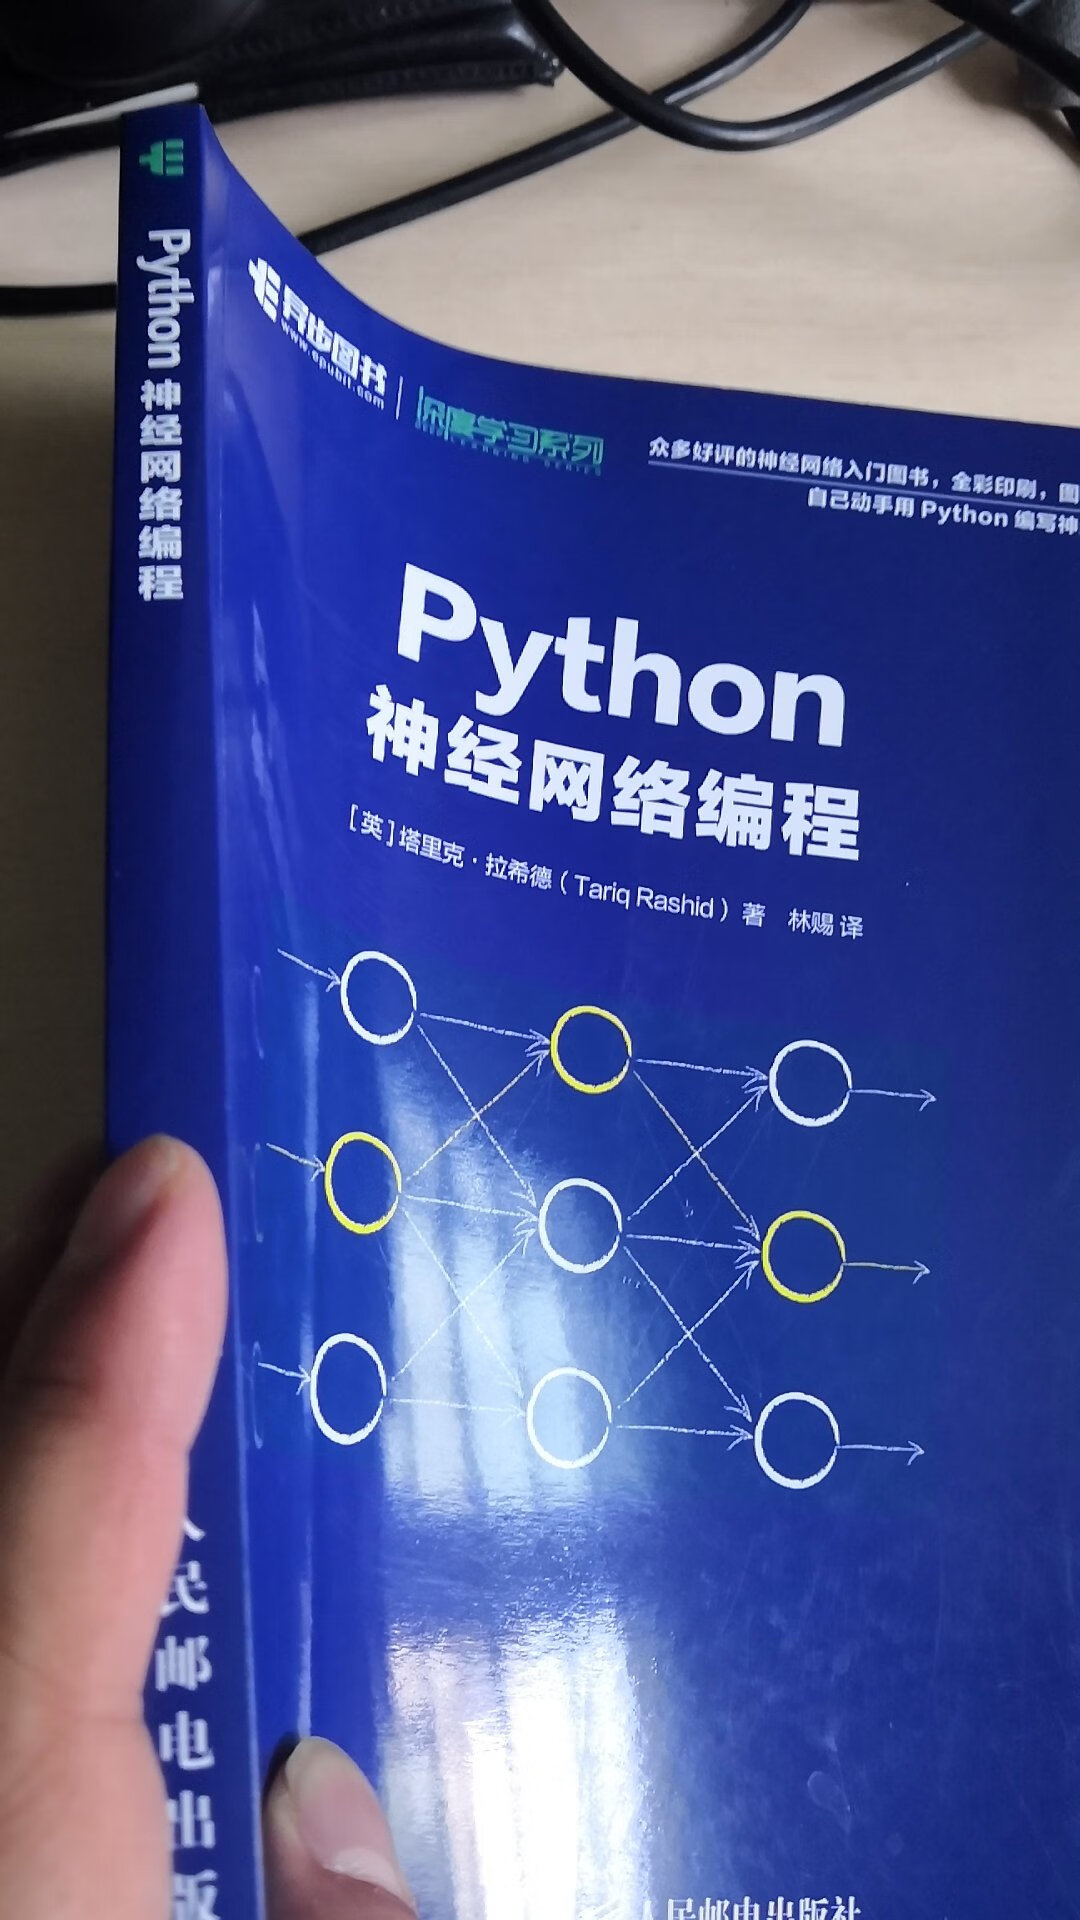 舒服后是一本python的入门书，作为初学者了解一下python的一些设计思想还是可以的。